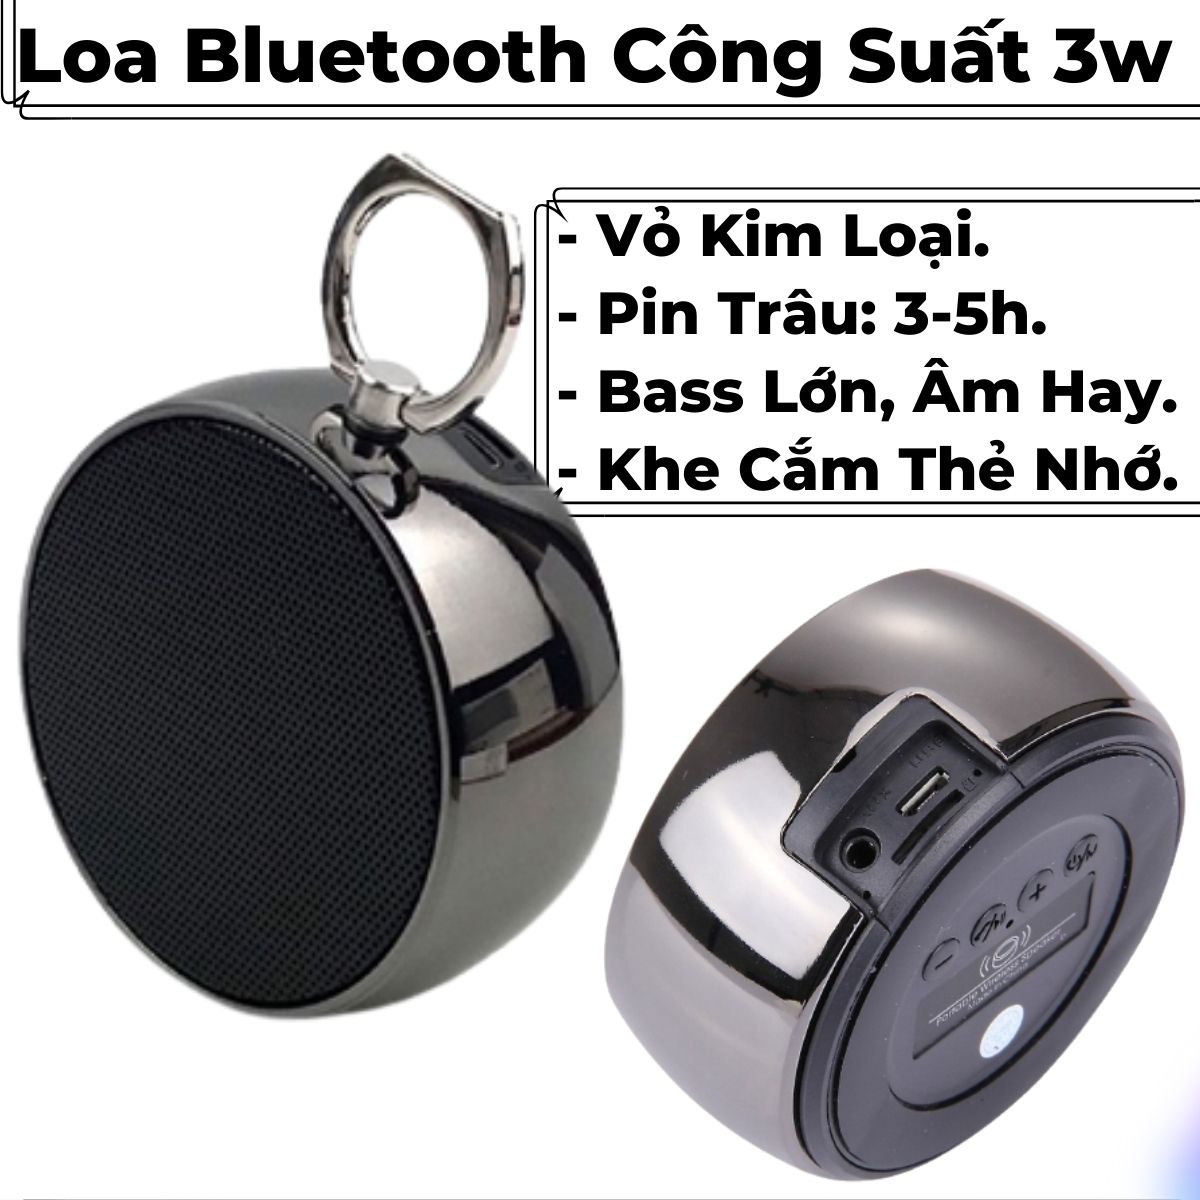 Loa Bluetooth Mini Nghe Nhạc Công Suất Lớn, Bass Mạnh, Có Khe Cắm Thẻ Nhớ, Giá Rẻ Cho Điện Thoại, Máy Tính,... BS.02